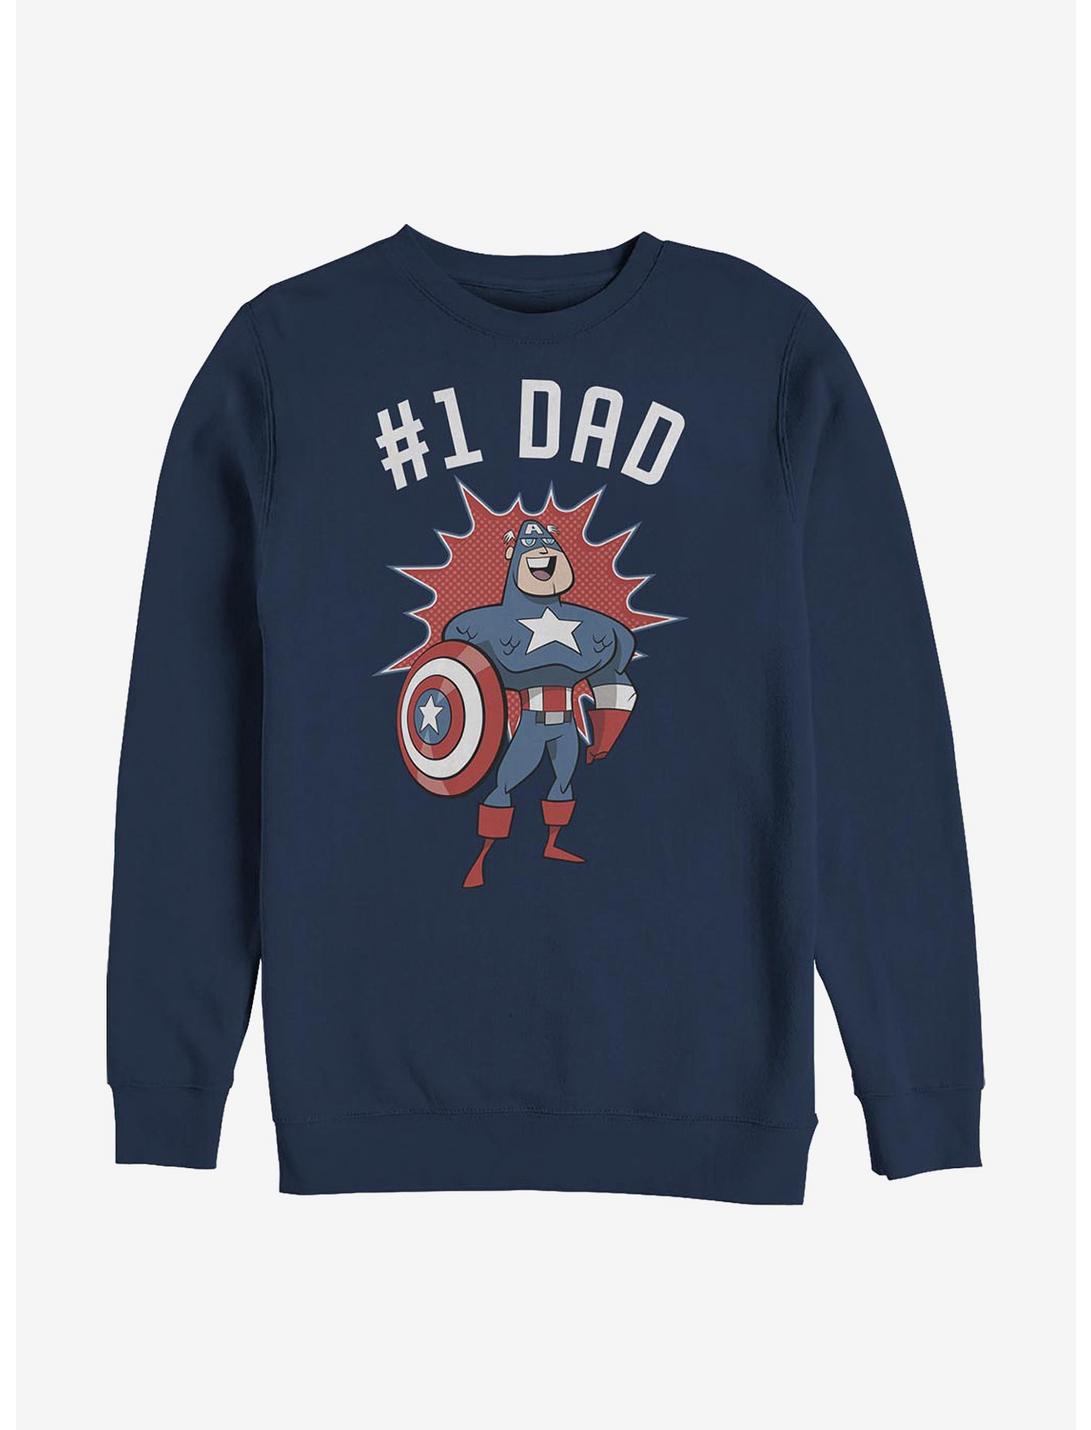 Marvel Captain America Number 1 Dad Crew Sweatshirt, NAVY, hi-res